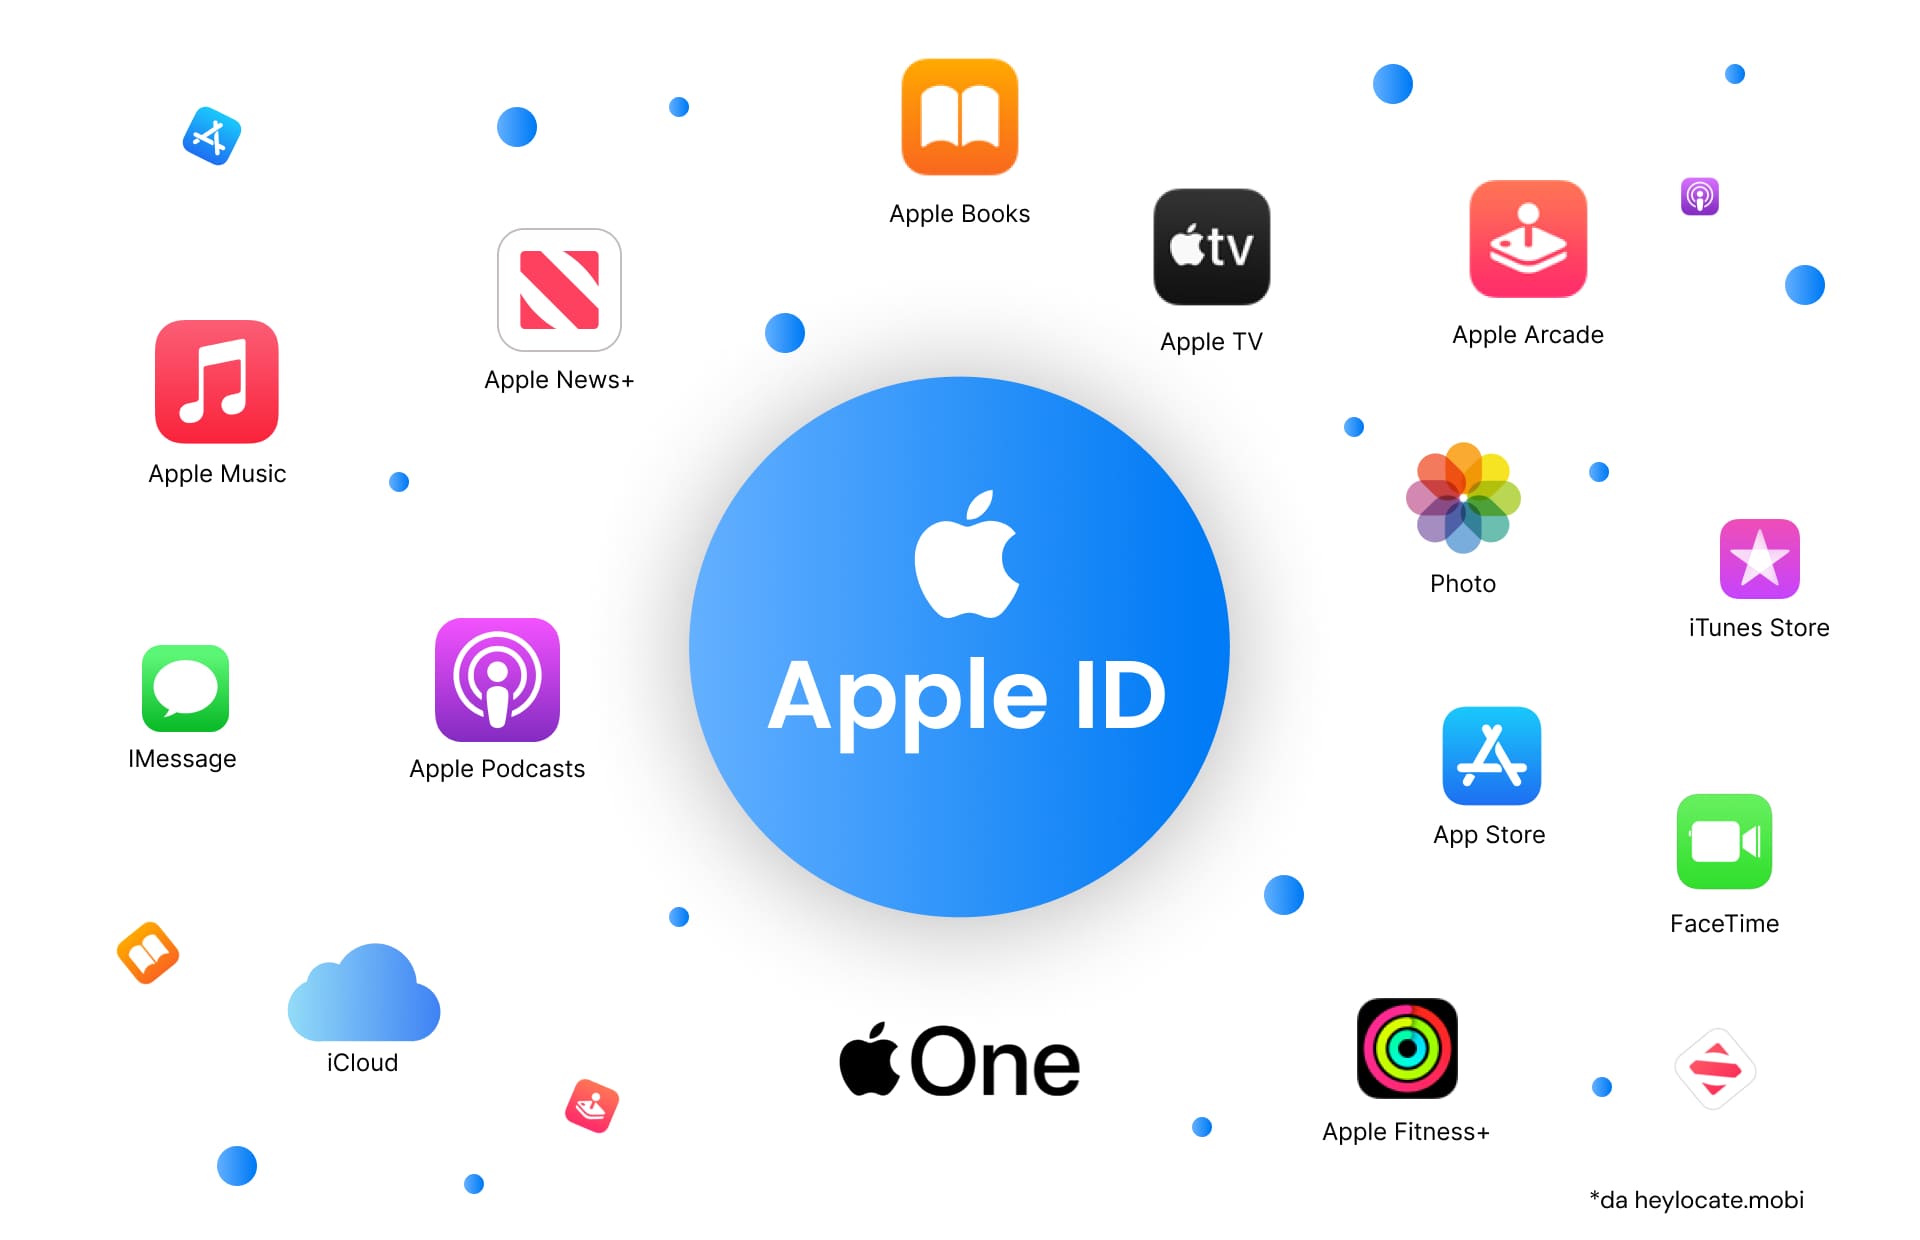 Rappresentazione grafica di un ID Apple circondato da varie icone di servizi Apple come Apple Music, Apple News+, Apple TV, Apple Books, Apple Arcade, Foto, iTunes Store, iMessage, Apple Podcasts, iCloud, App Store, FaceTime, Apple One e Apple Fitness+